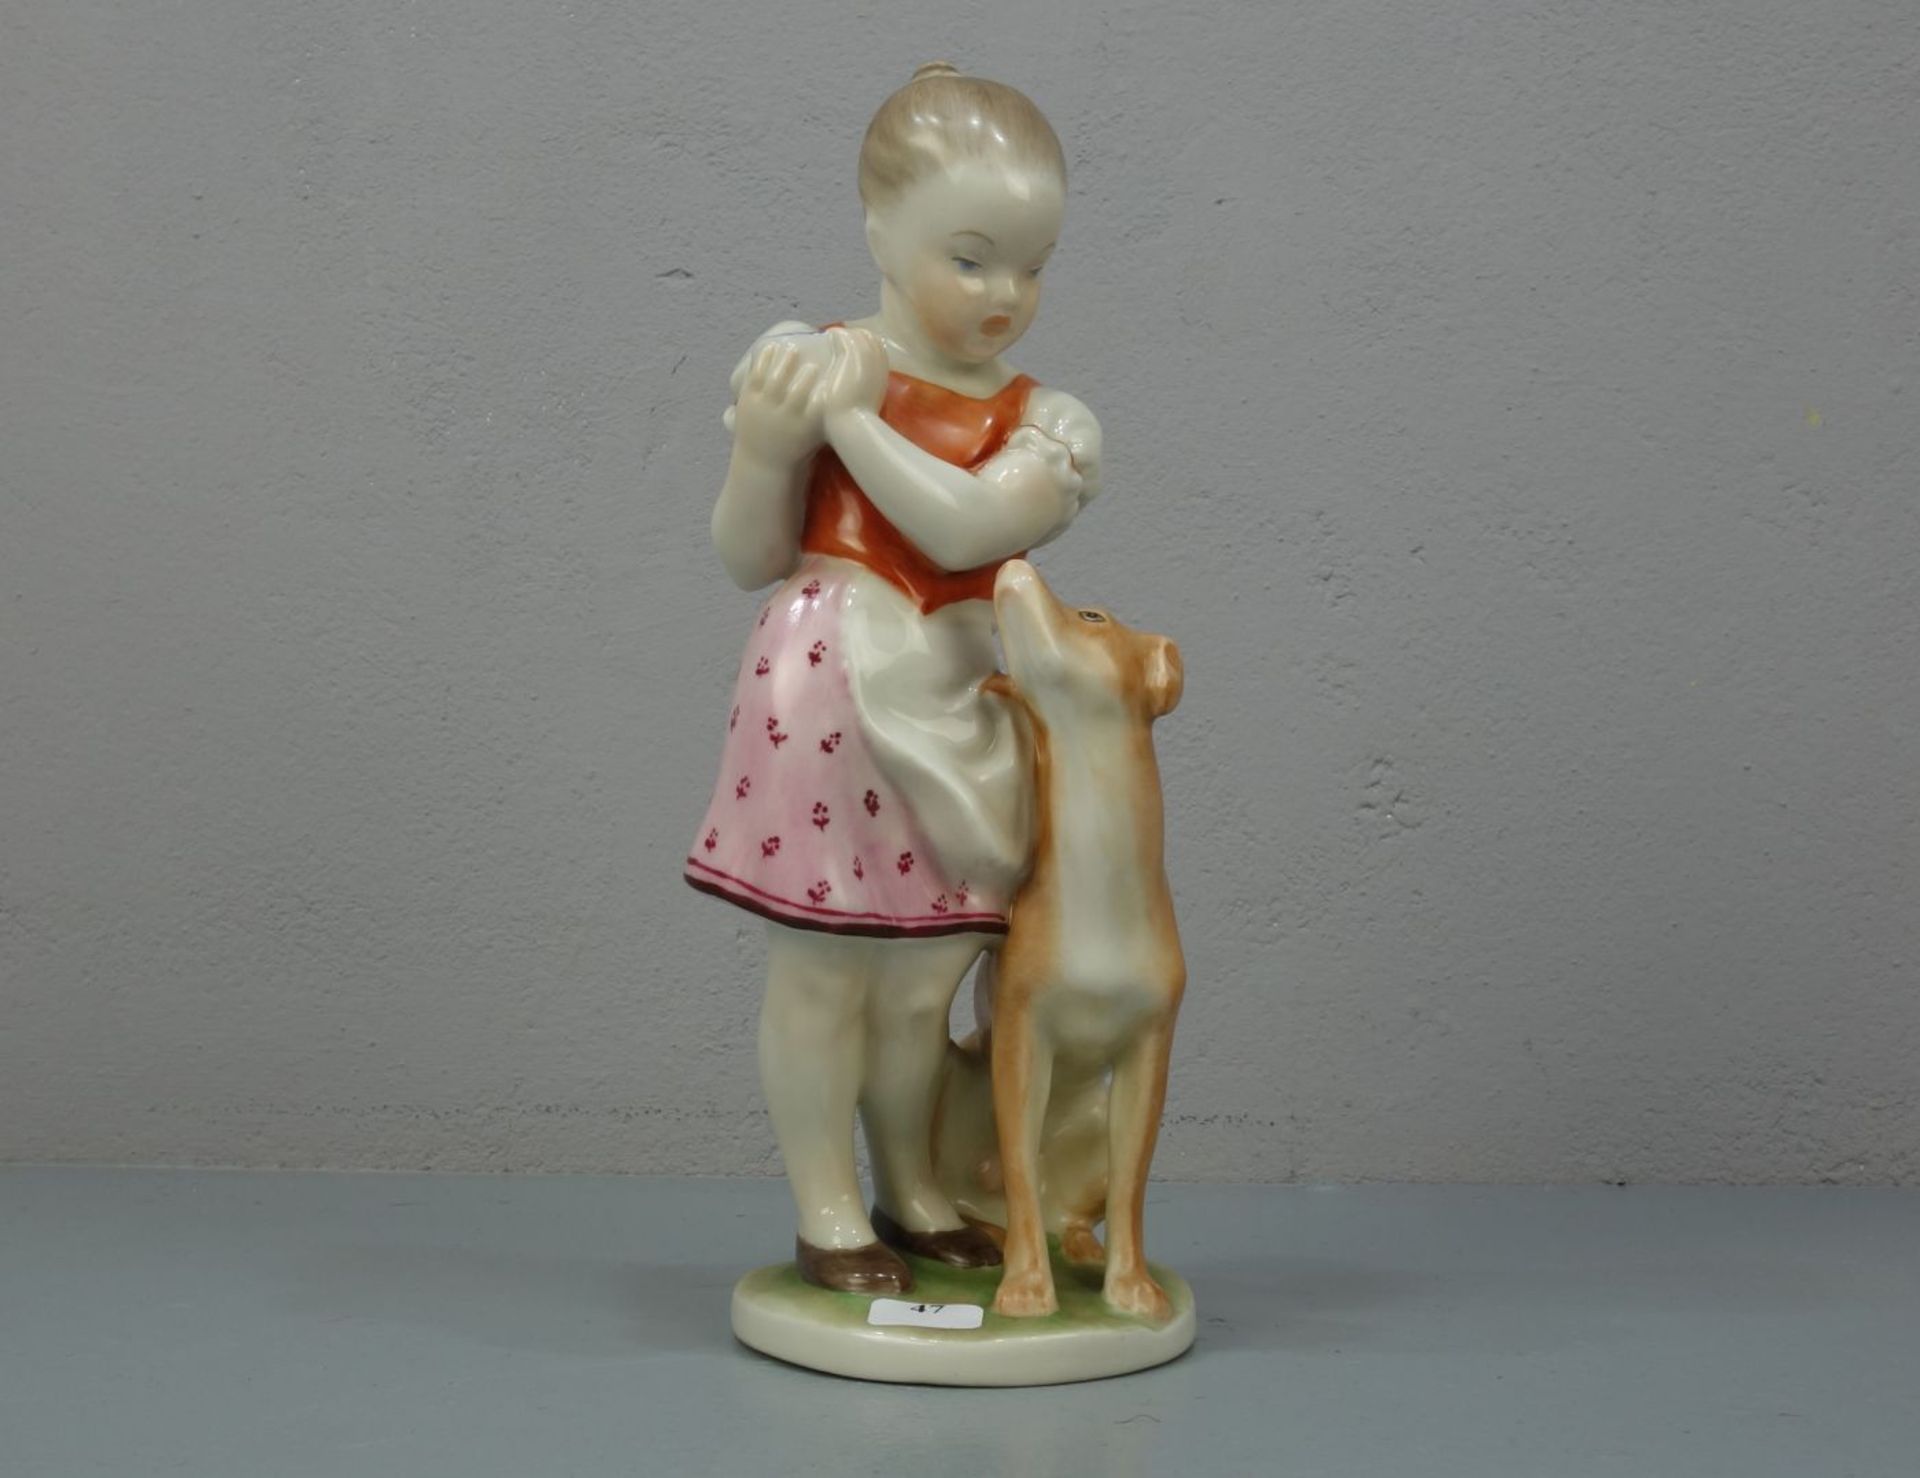 FIGURENGRUPPE: "Mädchen mit Hund" / porcelain figure "girl with a dog", Porzellan, Manufaktur